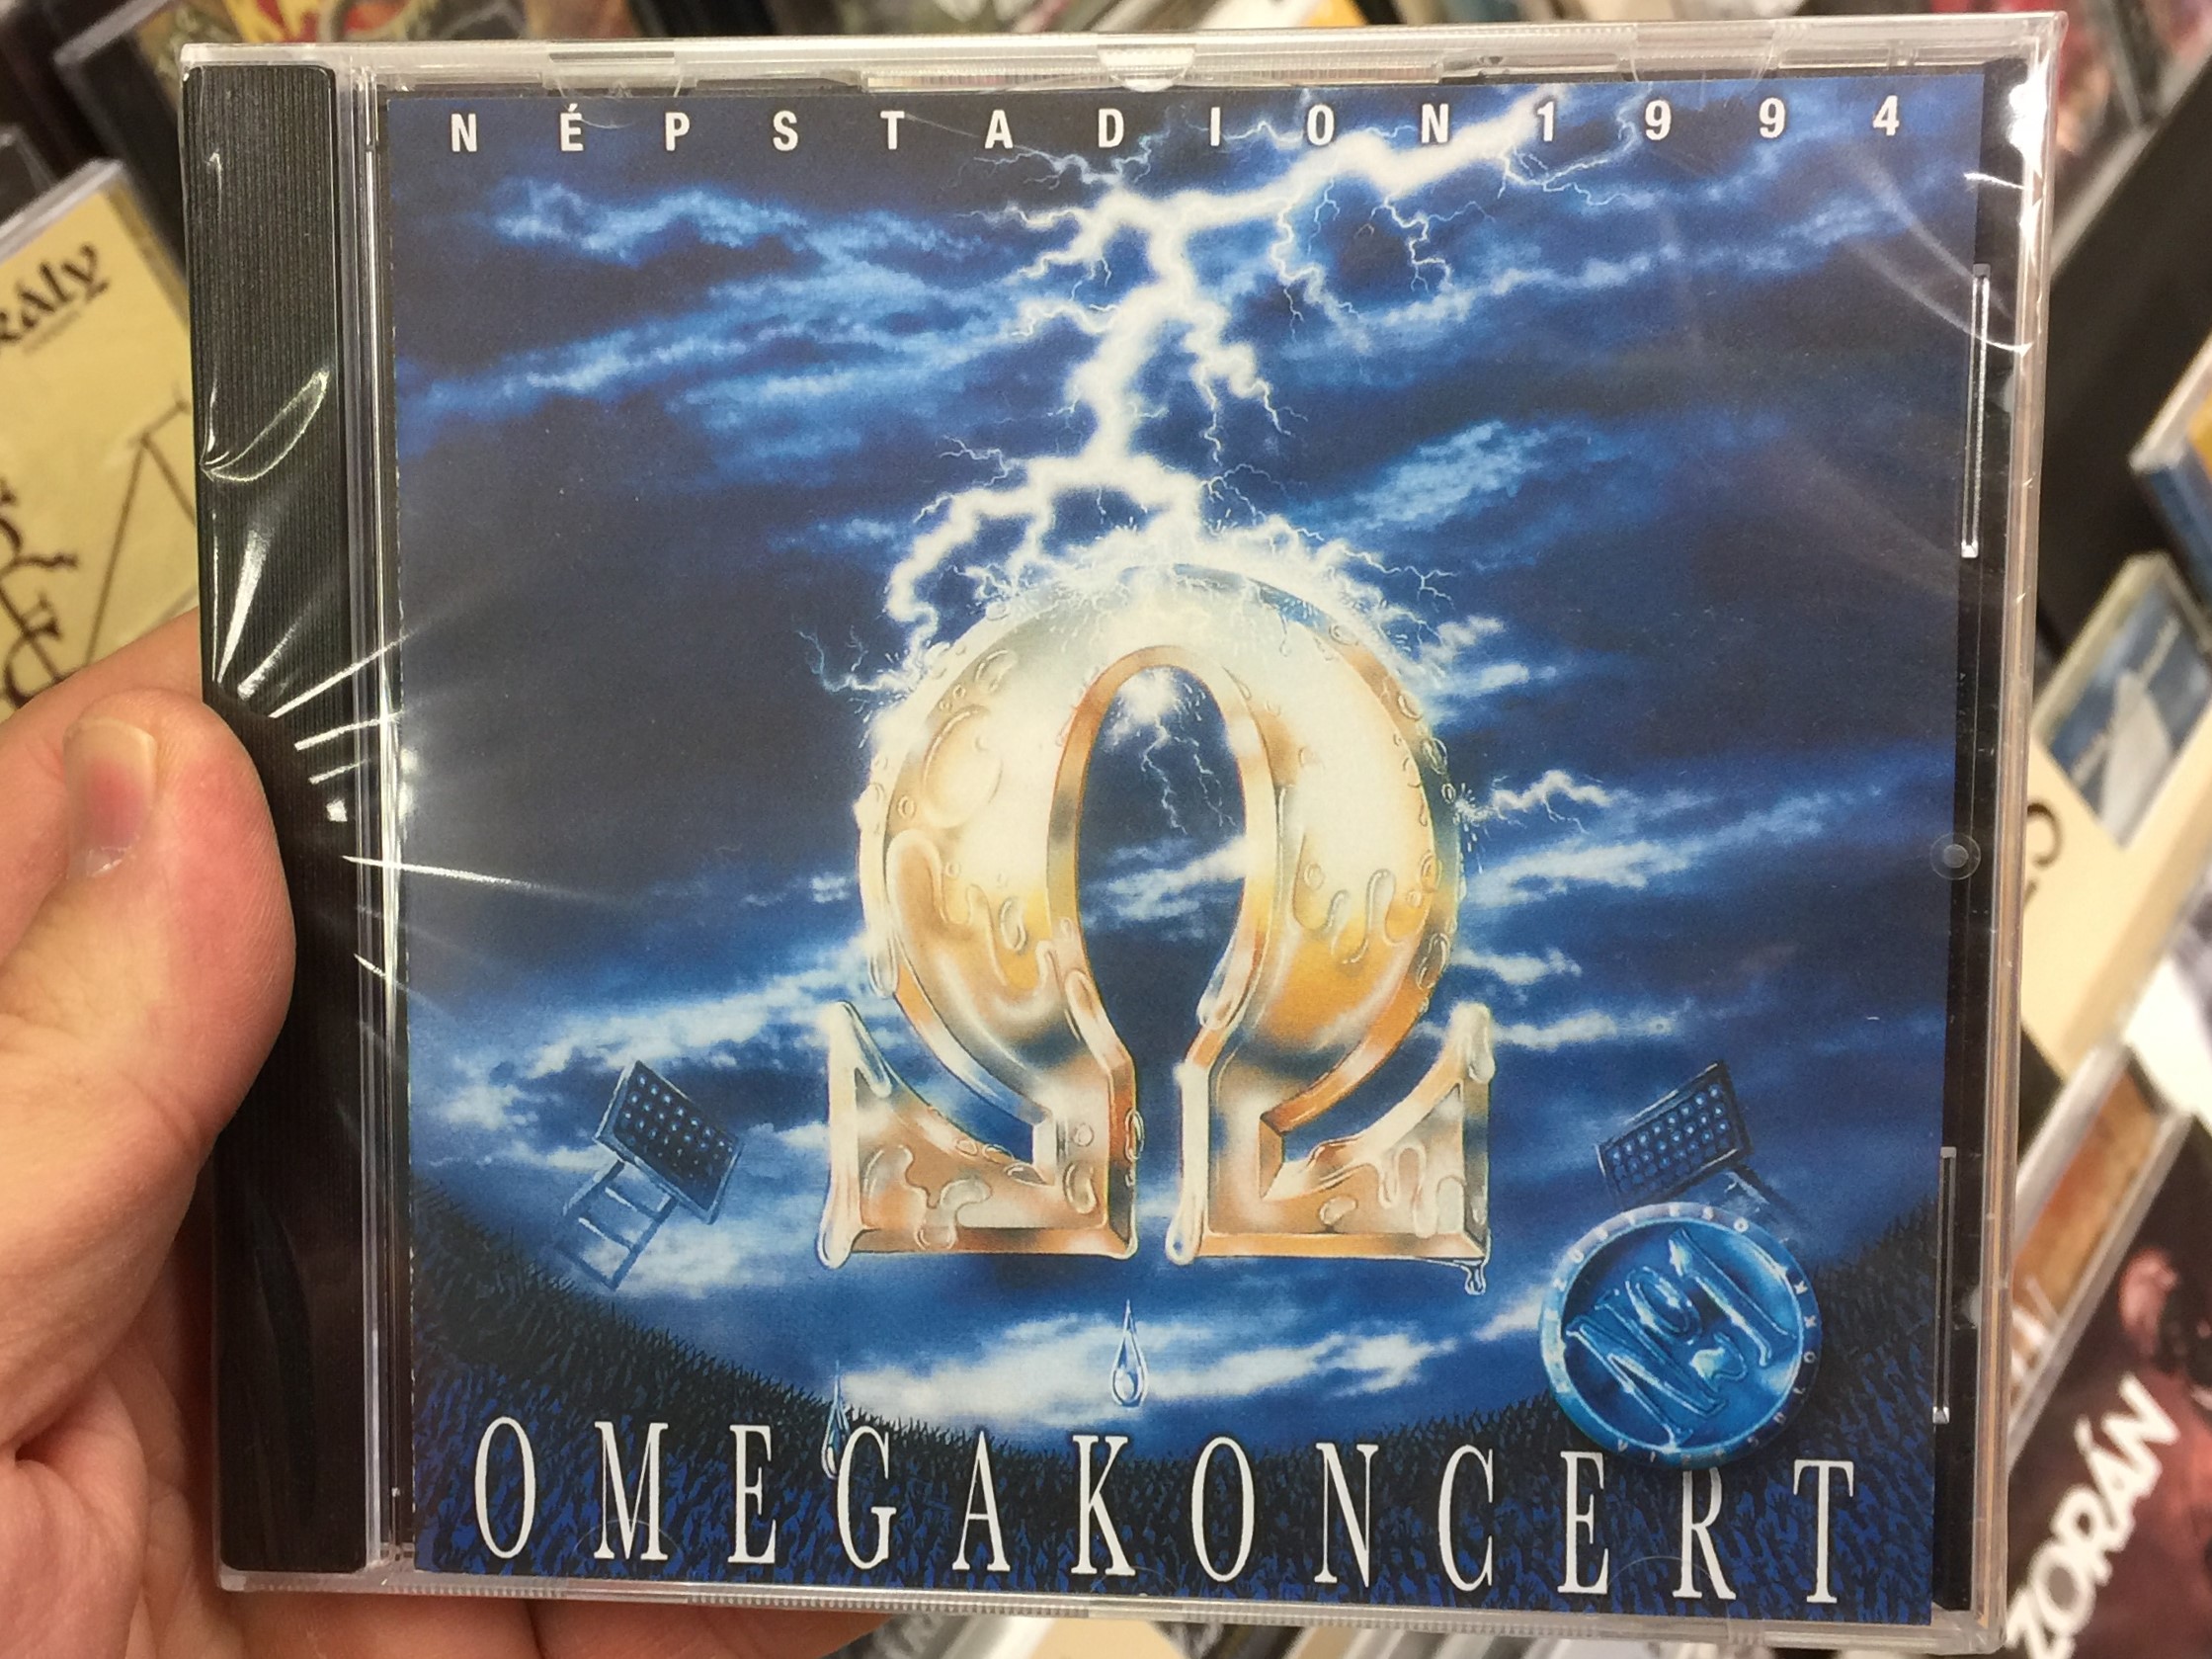 n-pstadion-1994-omegakoncert-no.-2-mega-audio-cd-5991813777928-1-.jpg